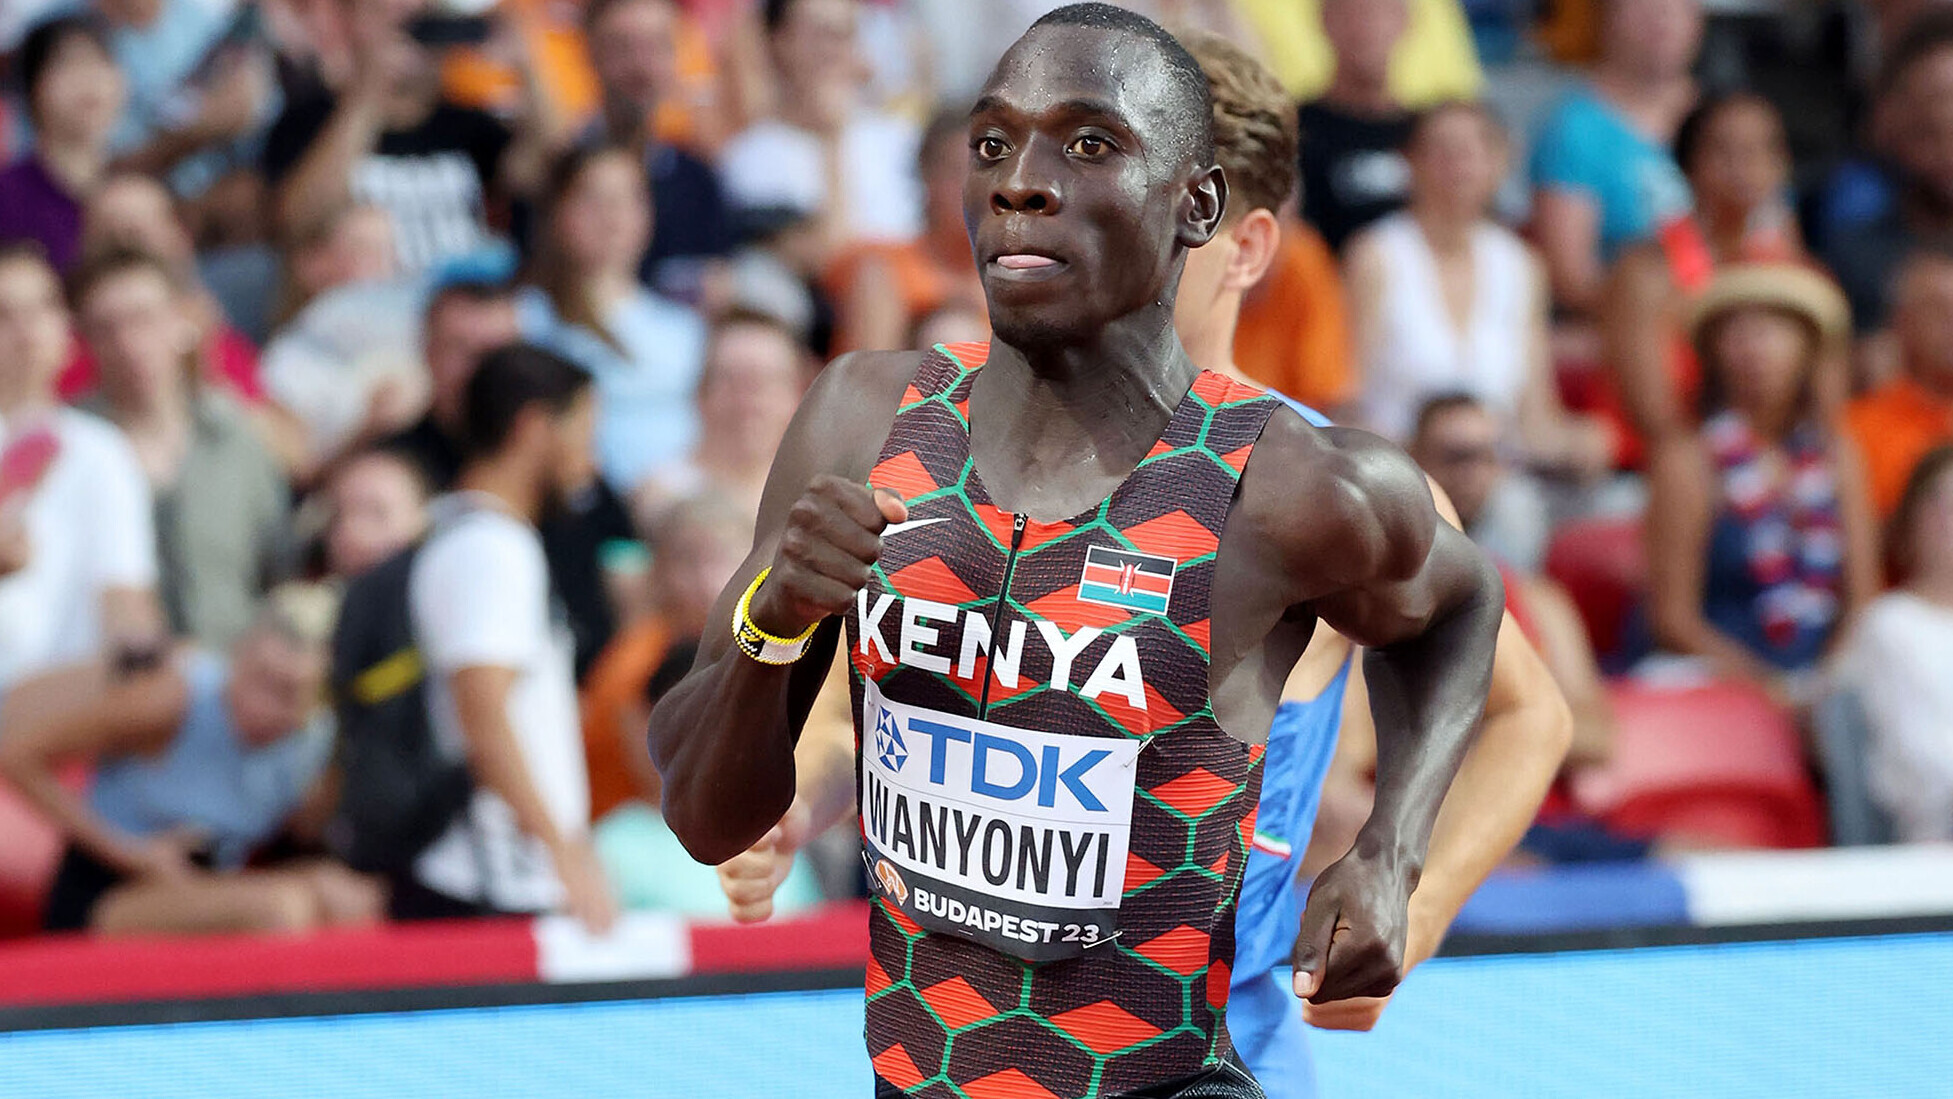 Top-Zeiten bei Kenia-Trials: Wanyonyi läuft 1:41,70 Minuten